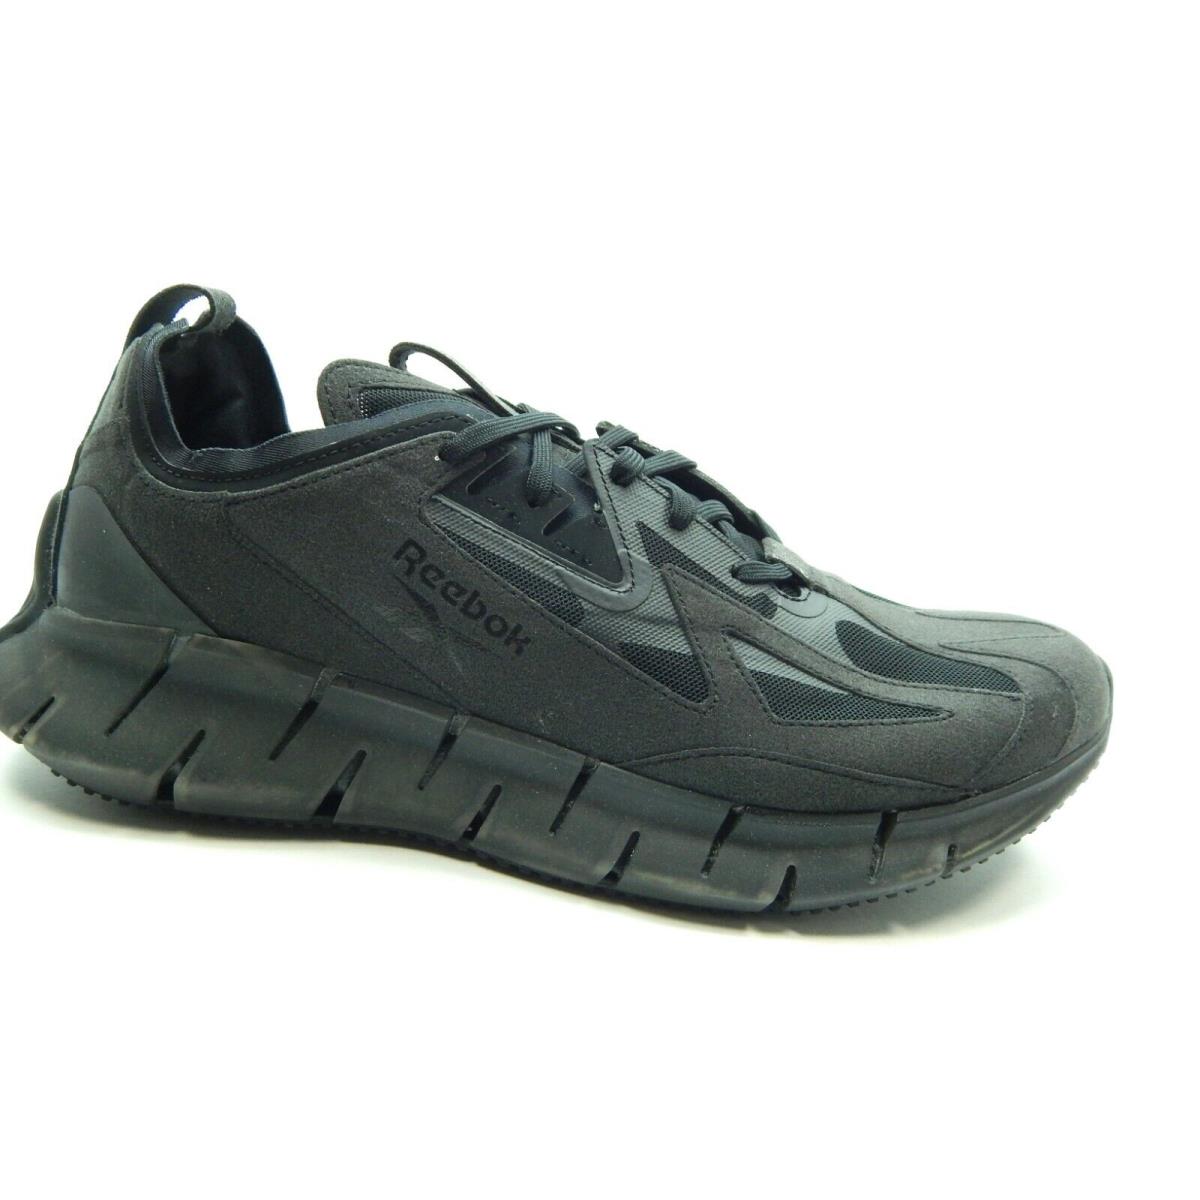 Reebok Zig Kinetica Men Shoes FW5737 Black Grey Size 11.5 - Gray